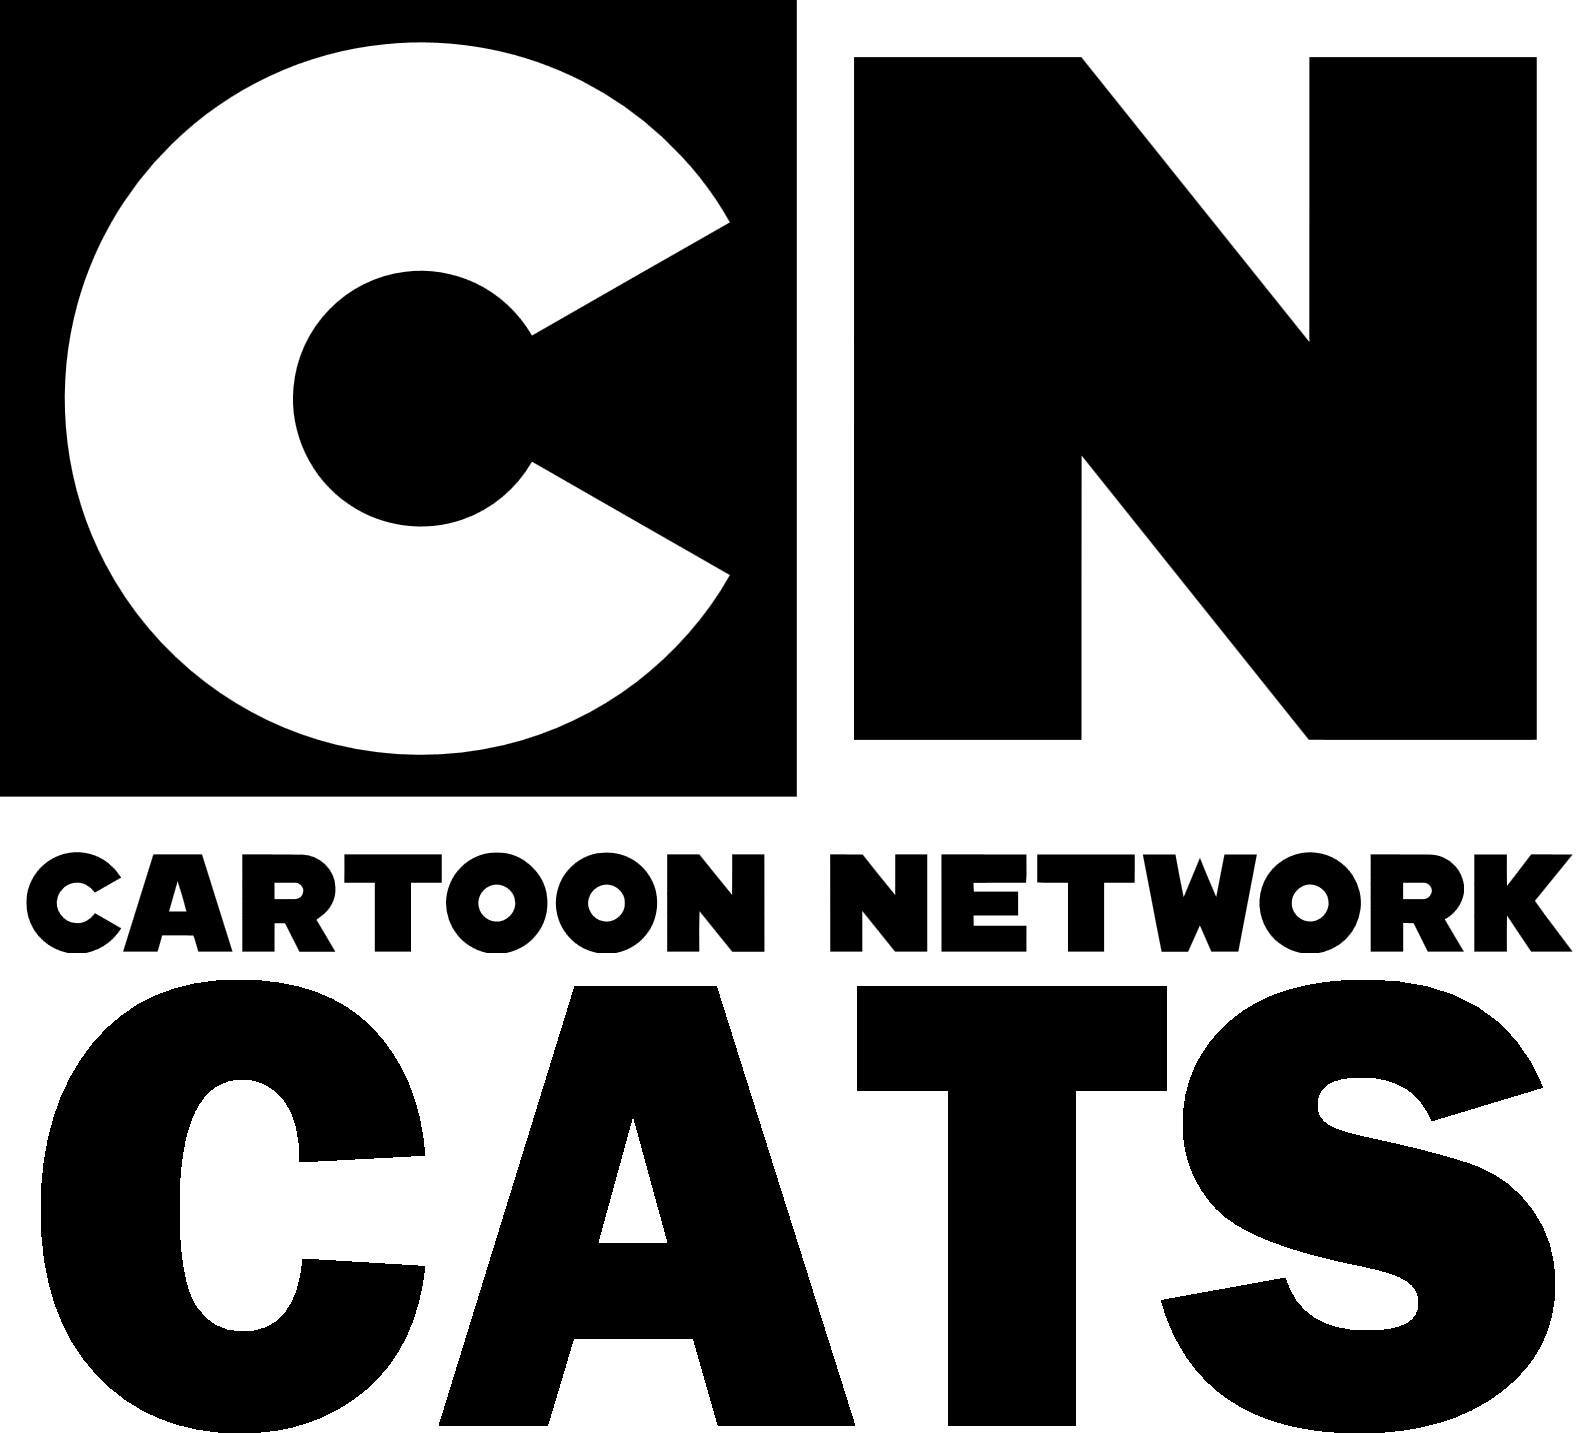 Cartoon network southeastern european tv channel. Картун нетворк. Cartoon Network логотип. Картун нетворк 2012. Cat Картун нетворк.